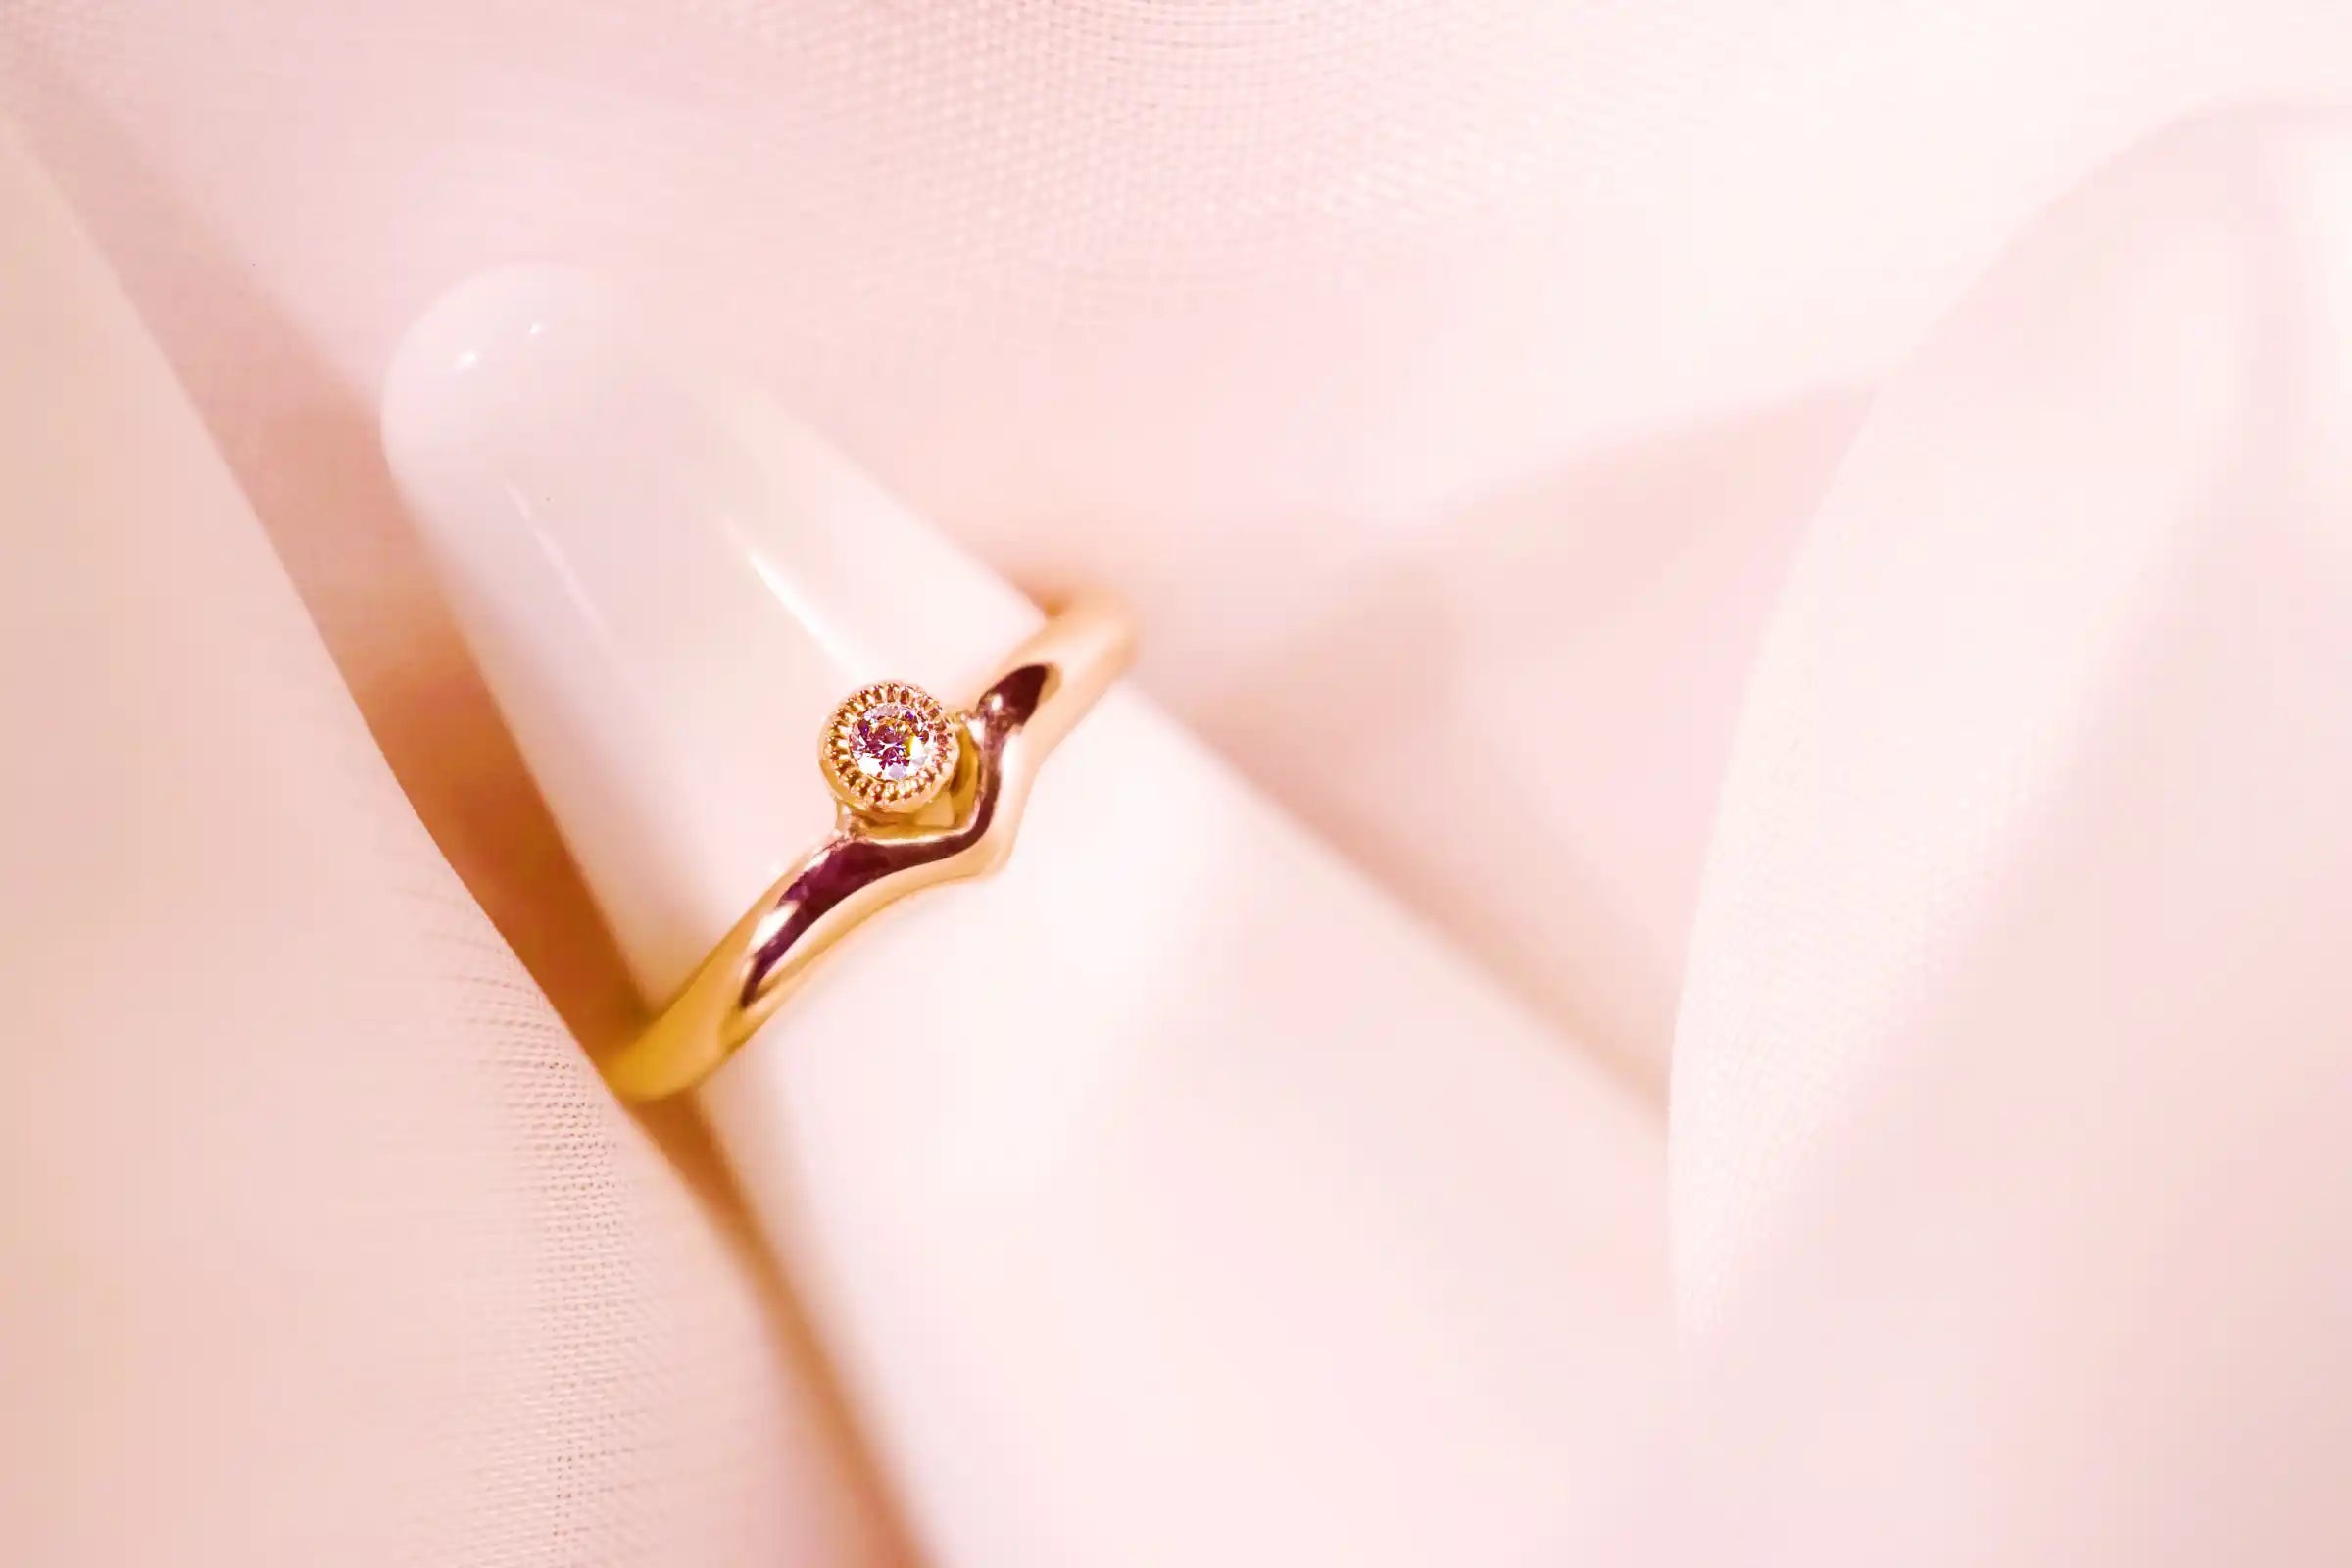 Chia Jewelry訂製k金鑽石婚戒求婚戒推薦分享，以微笑為主題，獨特優雅的求婚戒指設計